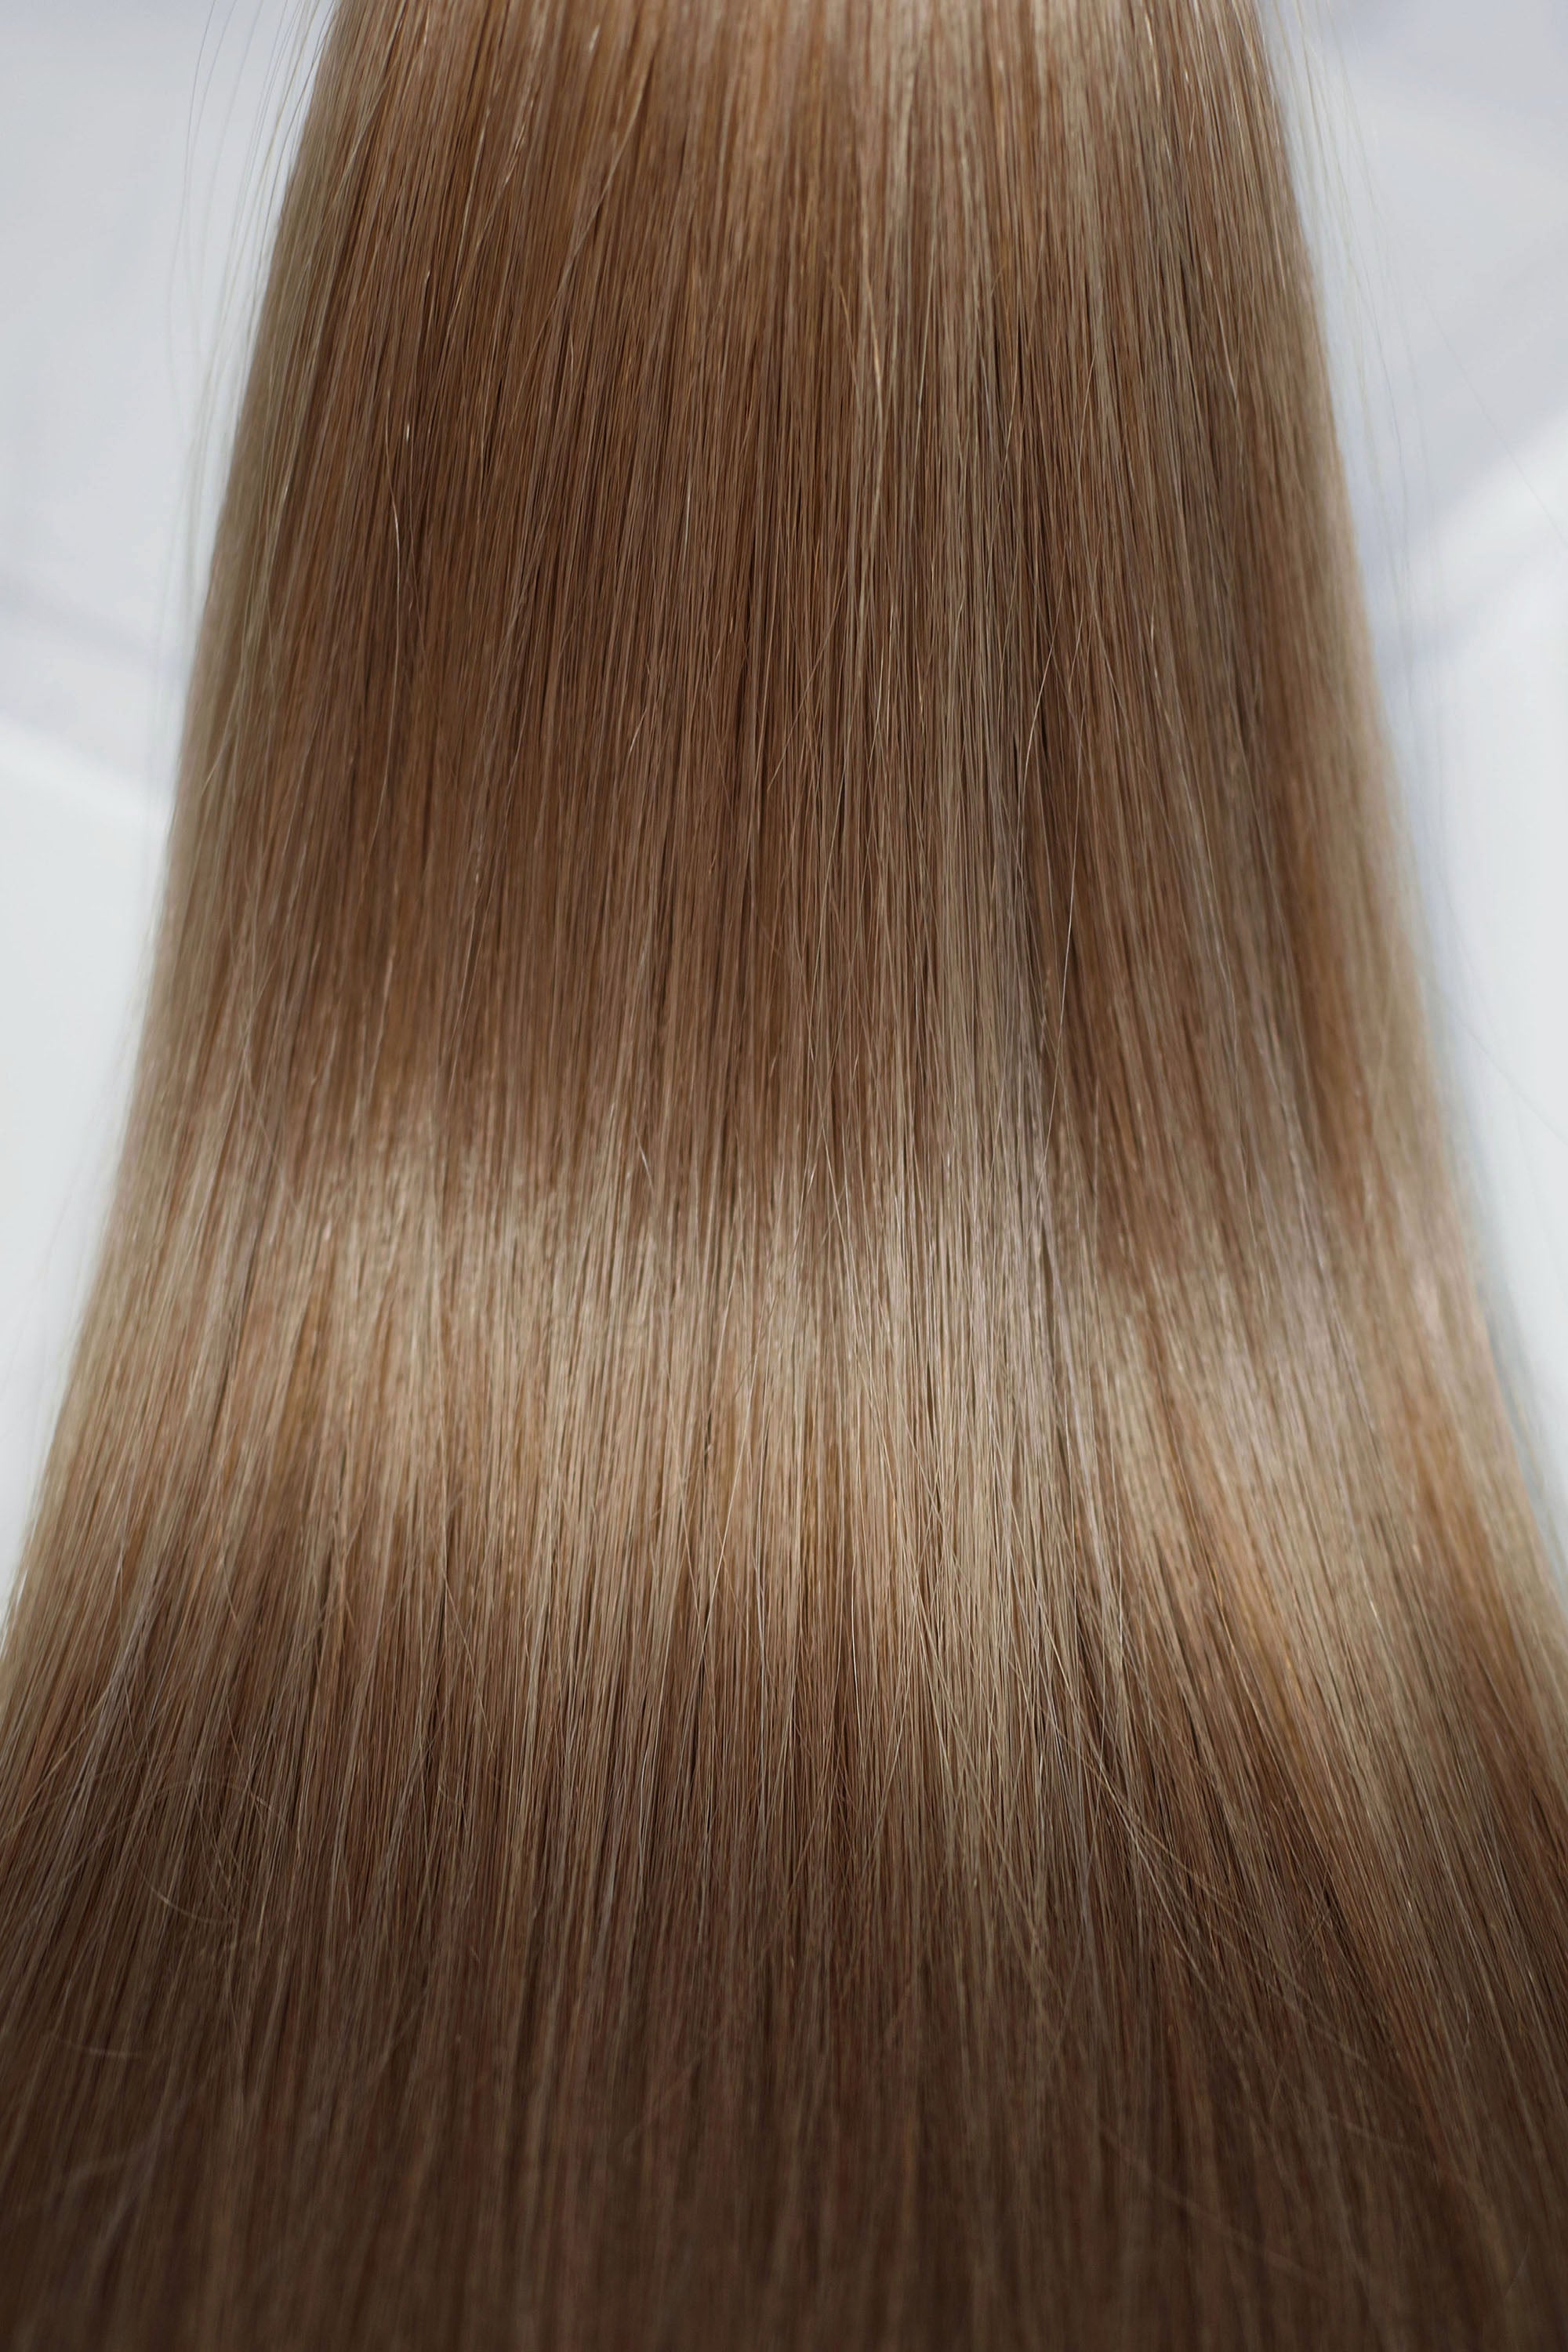 Behair professional Bulk hair "Premium" 22" (55cm) Natural Straight Light Ash Brown #10 - 25g hair extensions